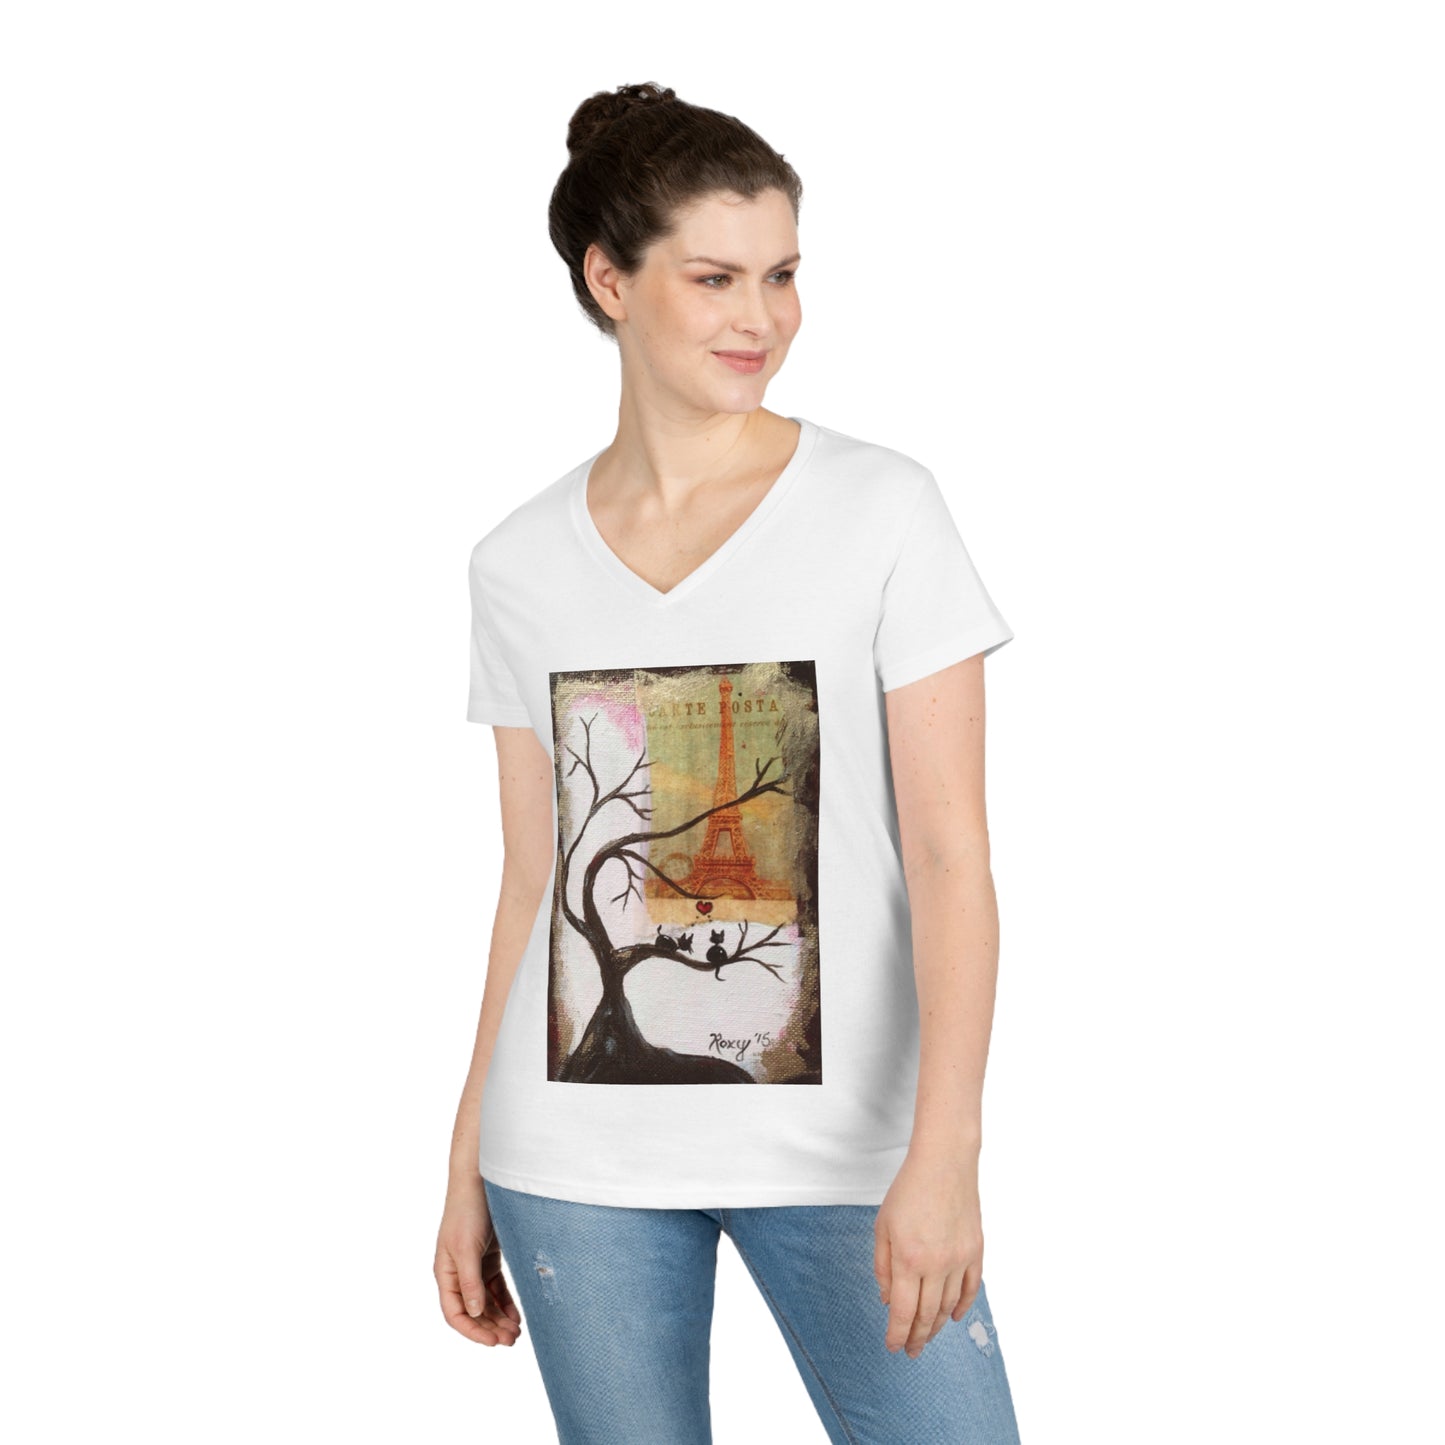 Even Cats Love Paris! Ladies' V-Neck T-Shirt